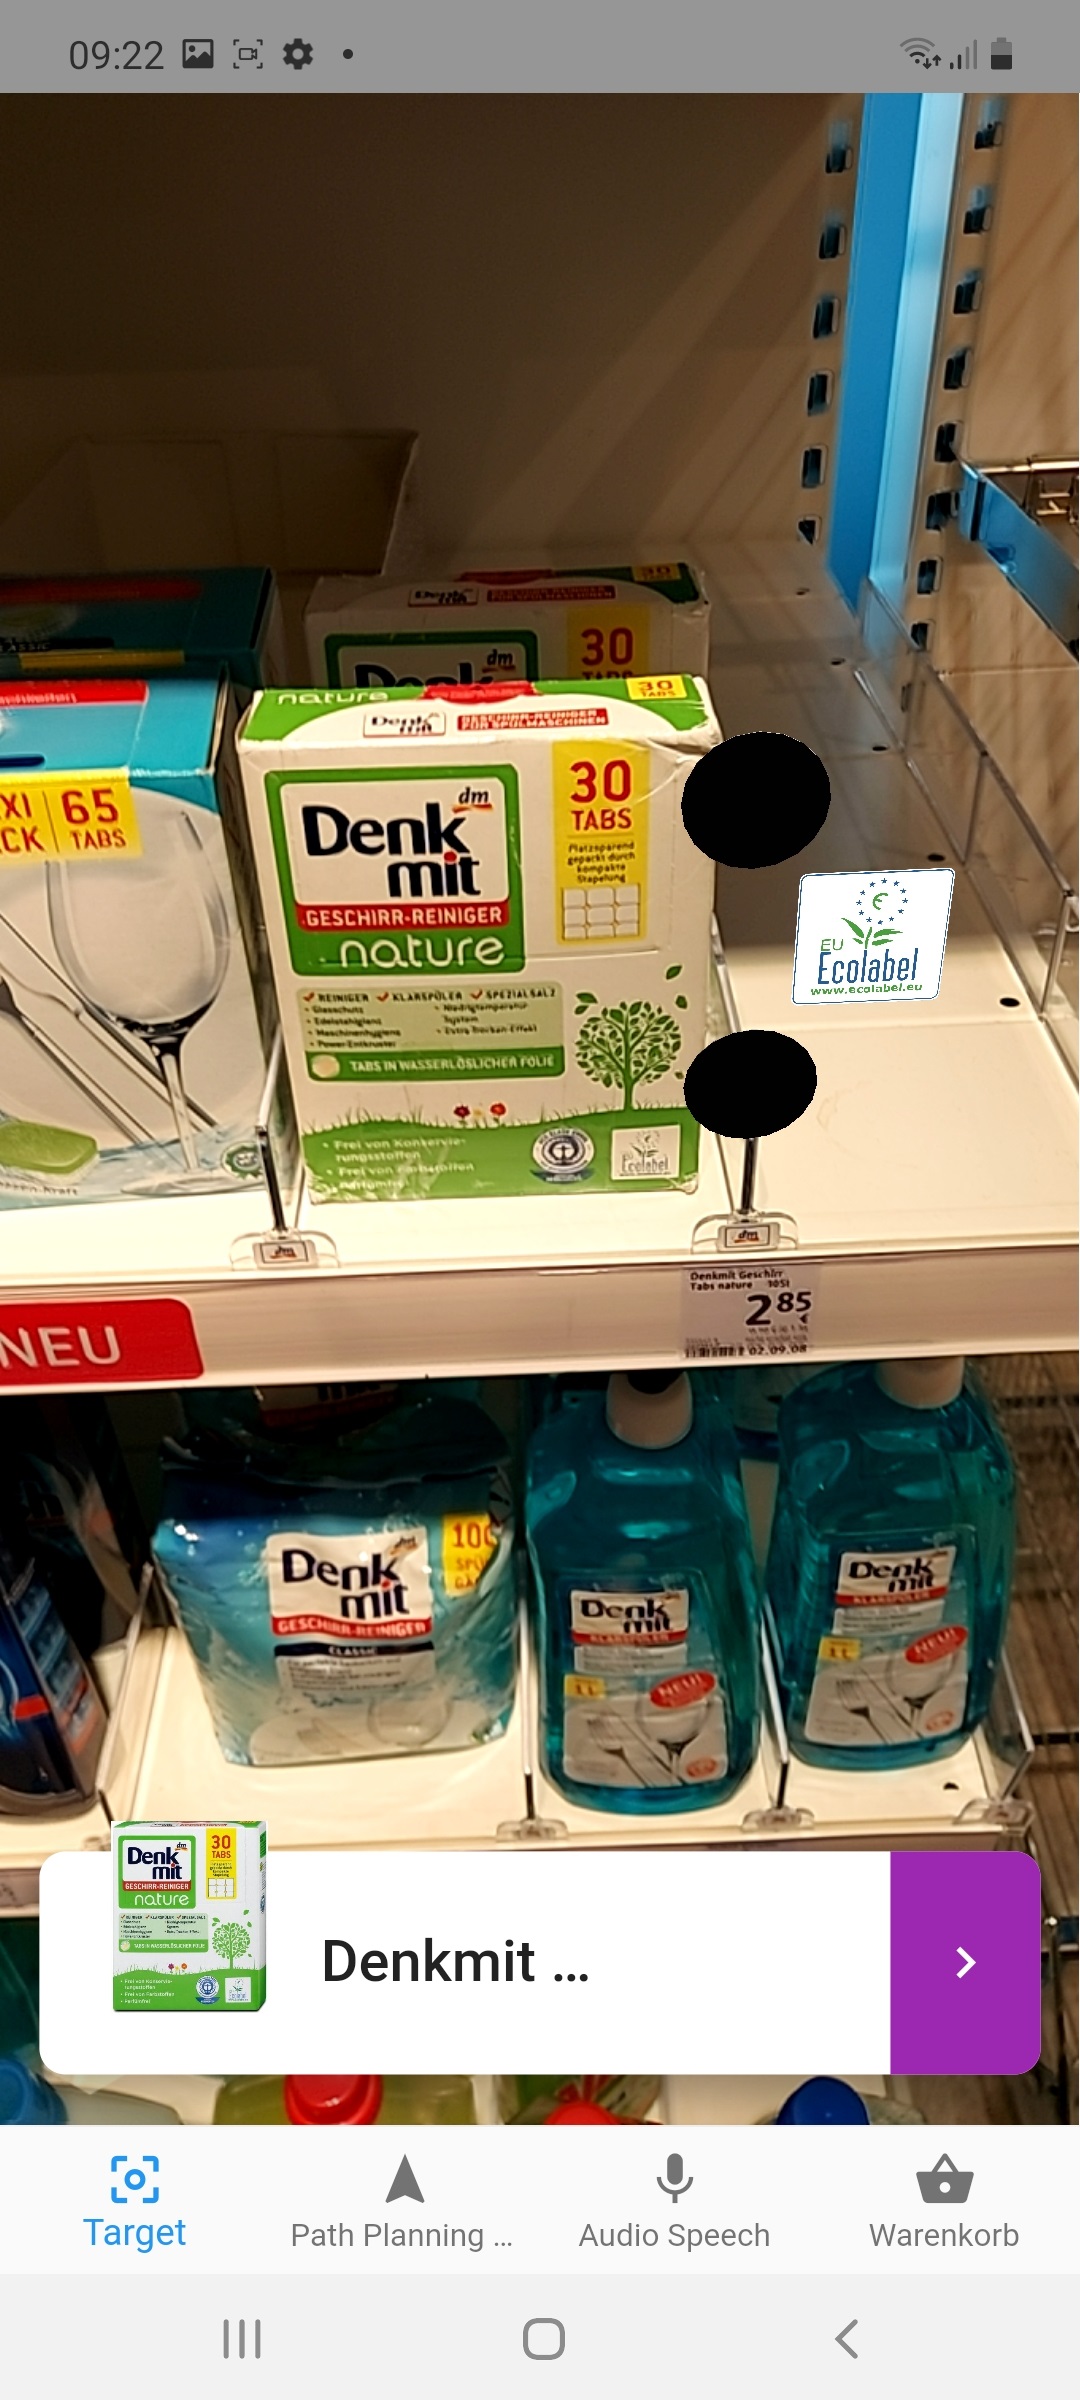 recognized detergent